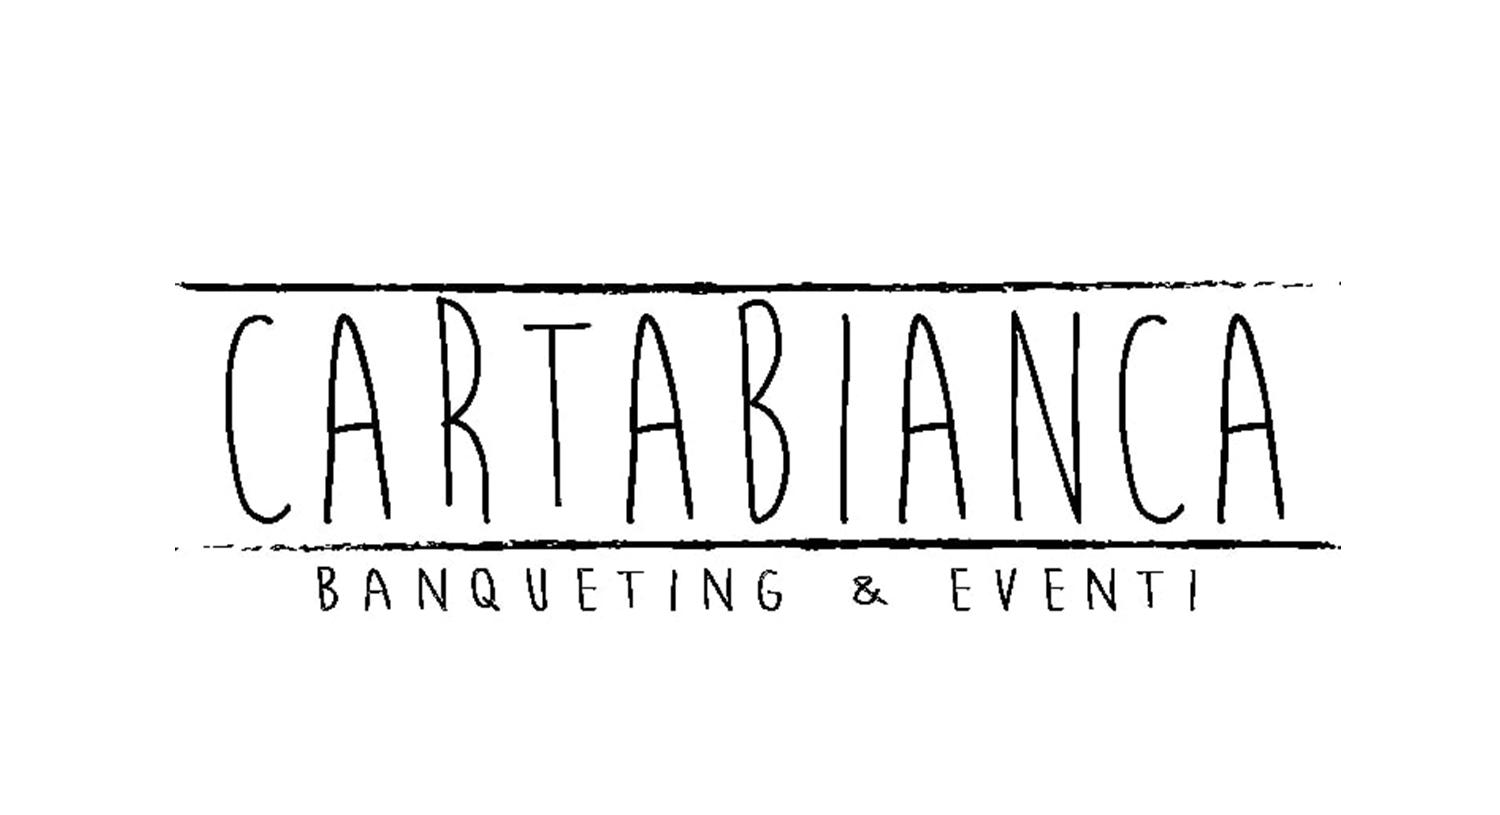 Cartabianca Banquenting & Eventi-Cartabianca Banqueting & Eventi